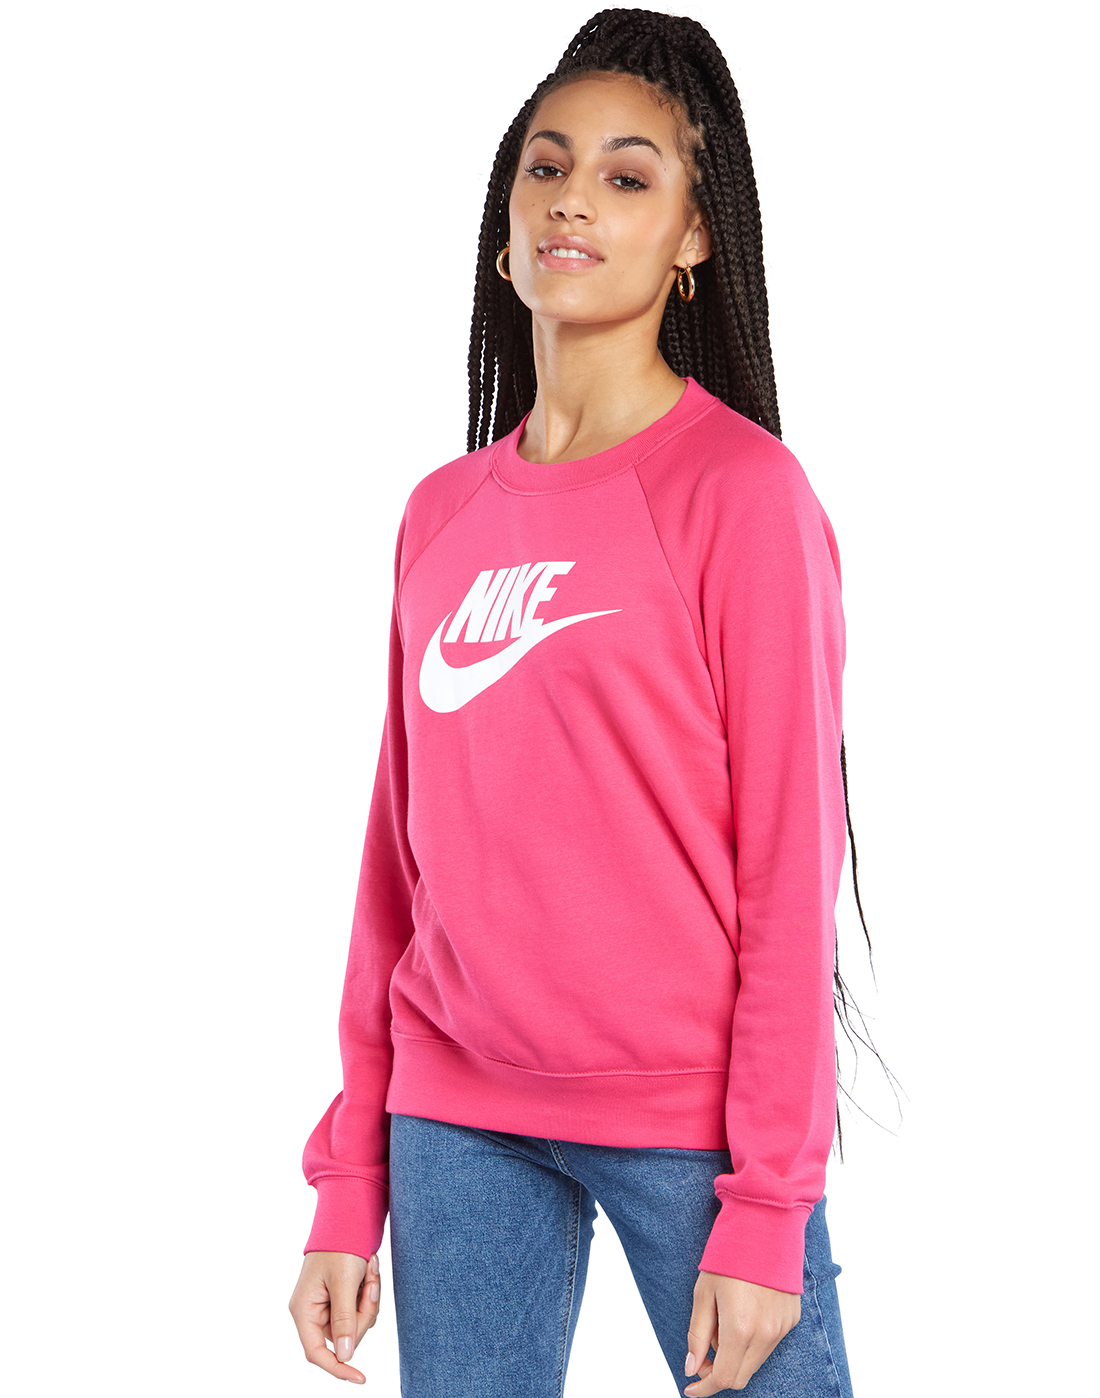 Download Nike Womens Fleece Crewneck Sweatshirt | Life Style Sports